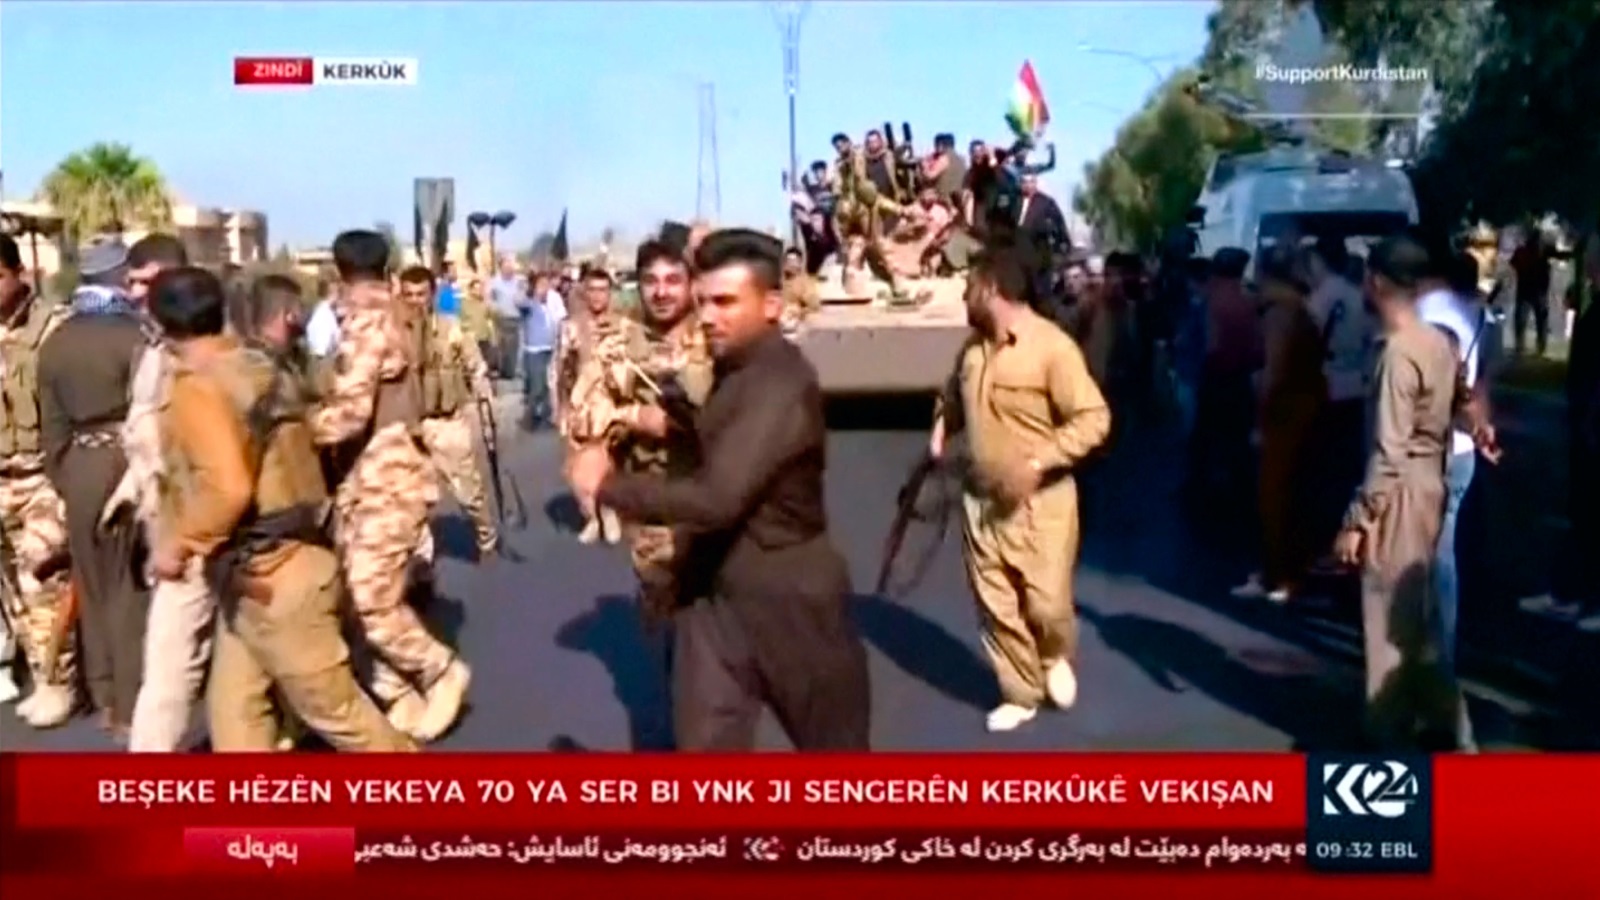 صور بثتها قناة كردية لقوات كردية في شوارع مدينة كركوك مركز المحافظة اليوم 